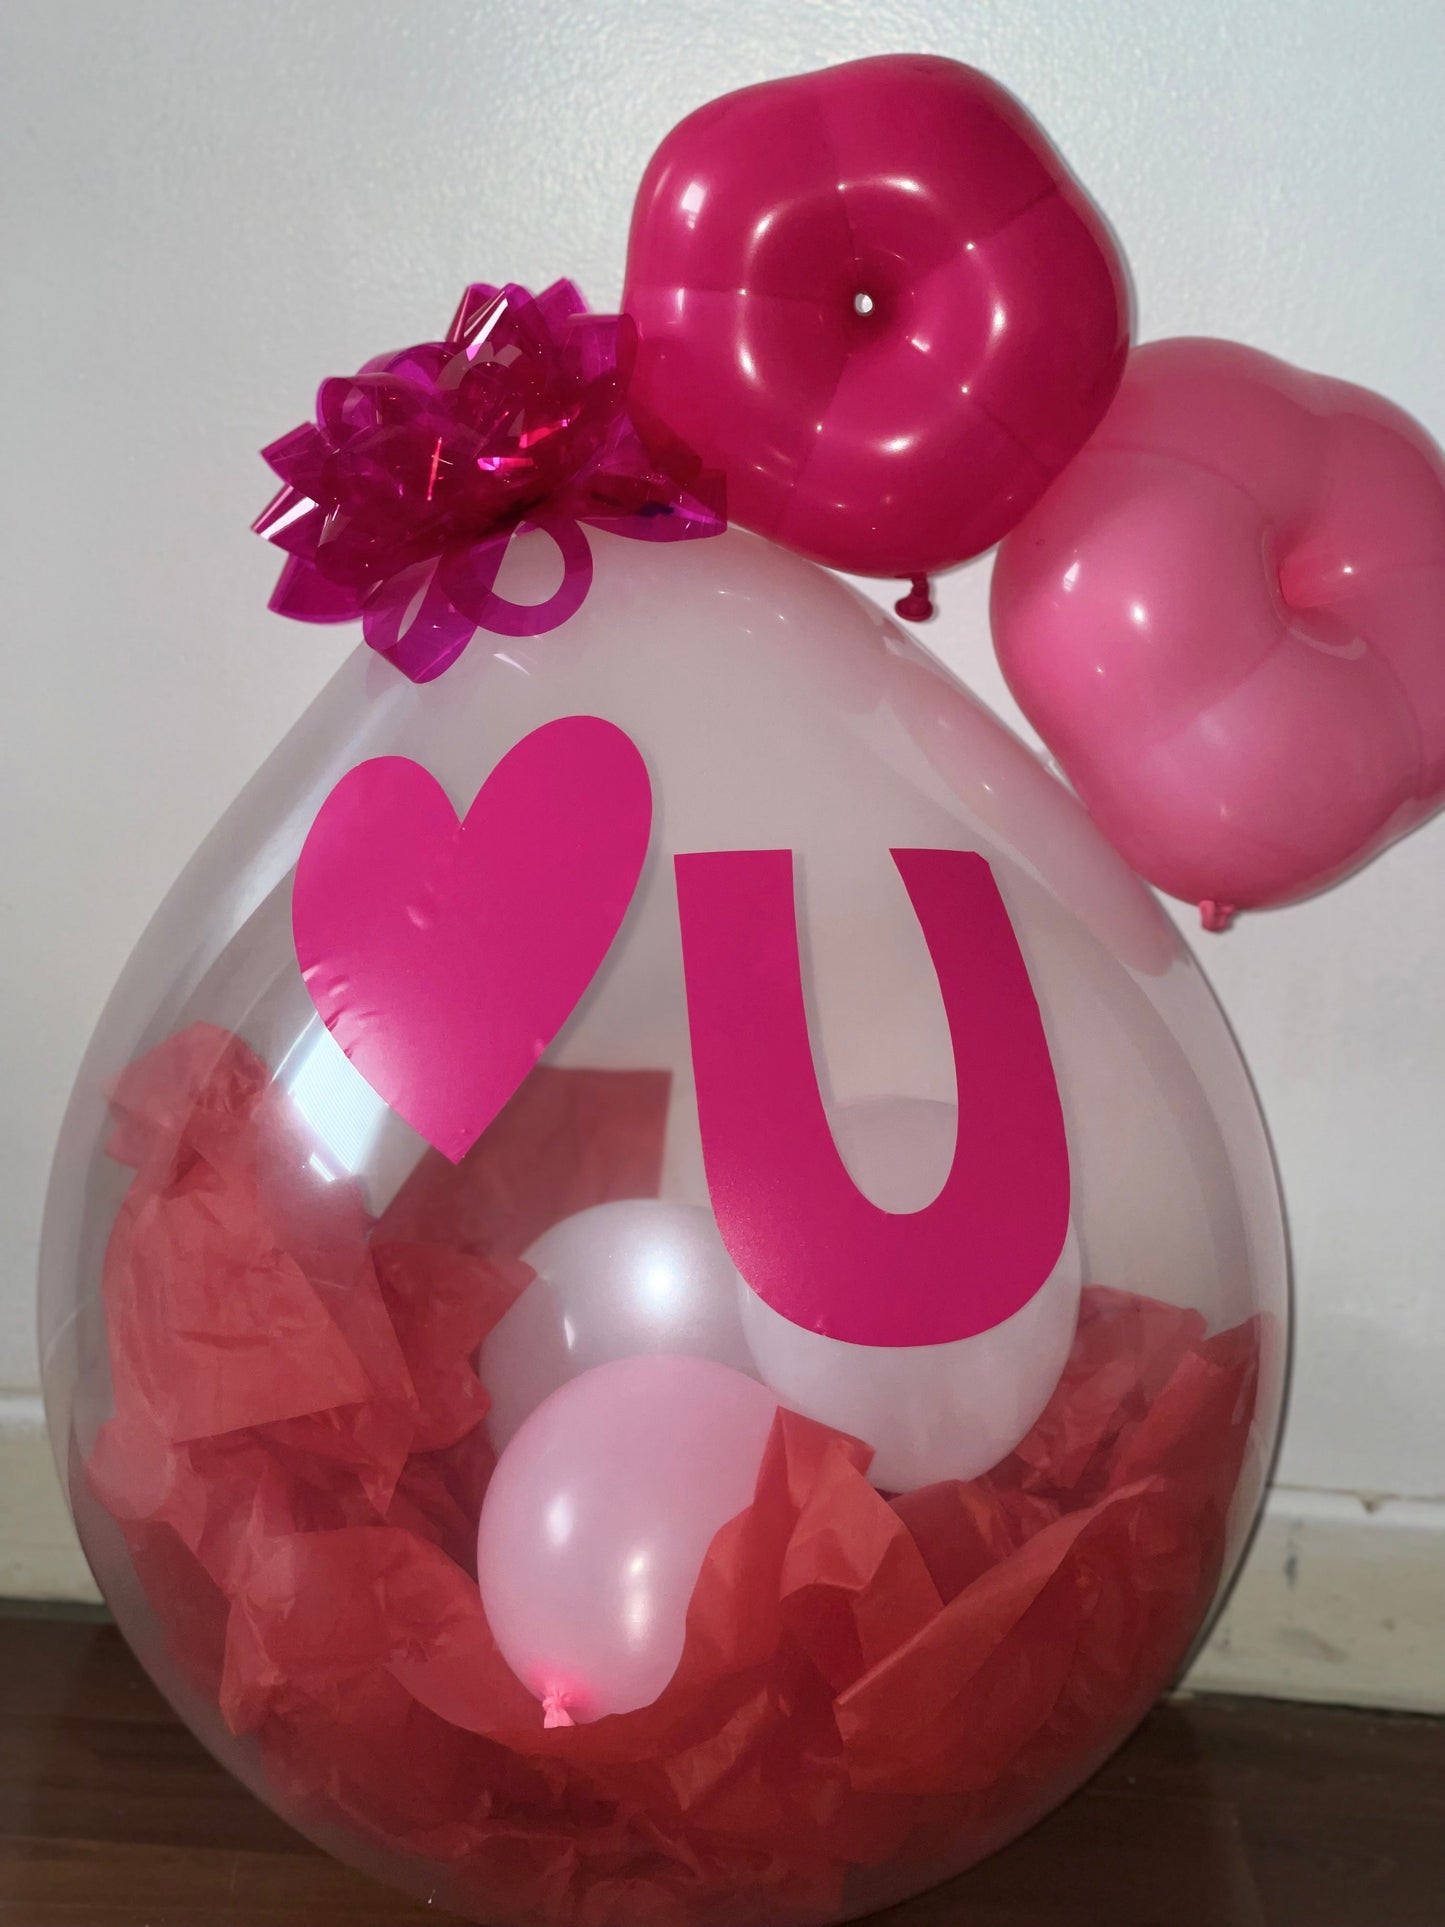 Stuffed balloon